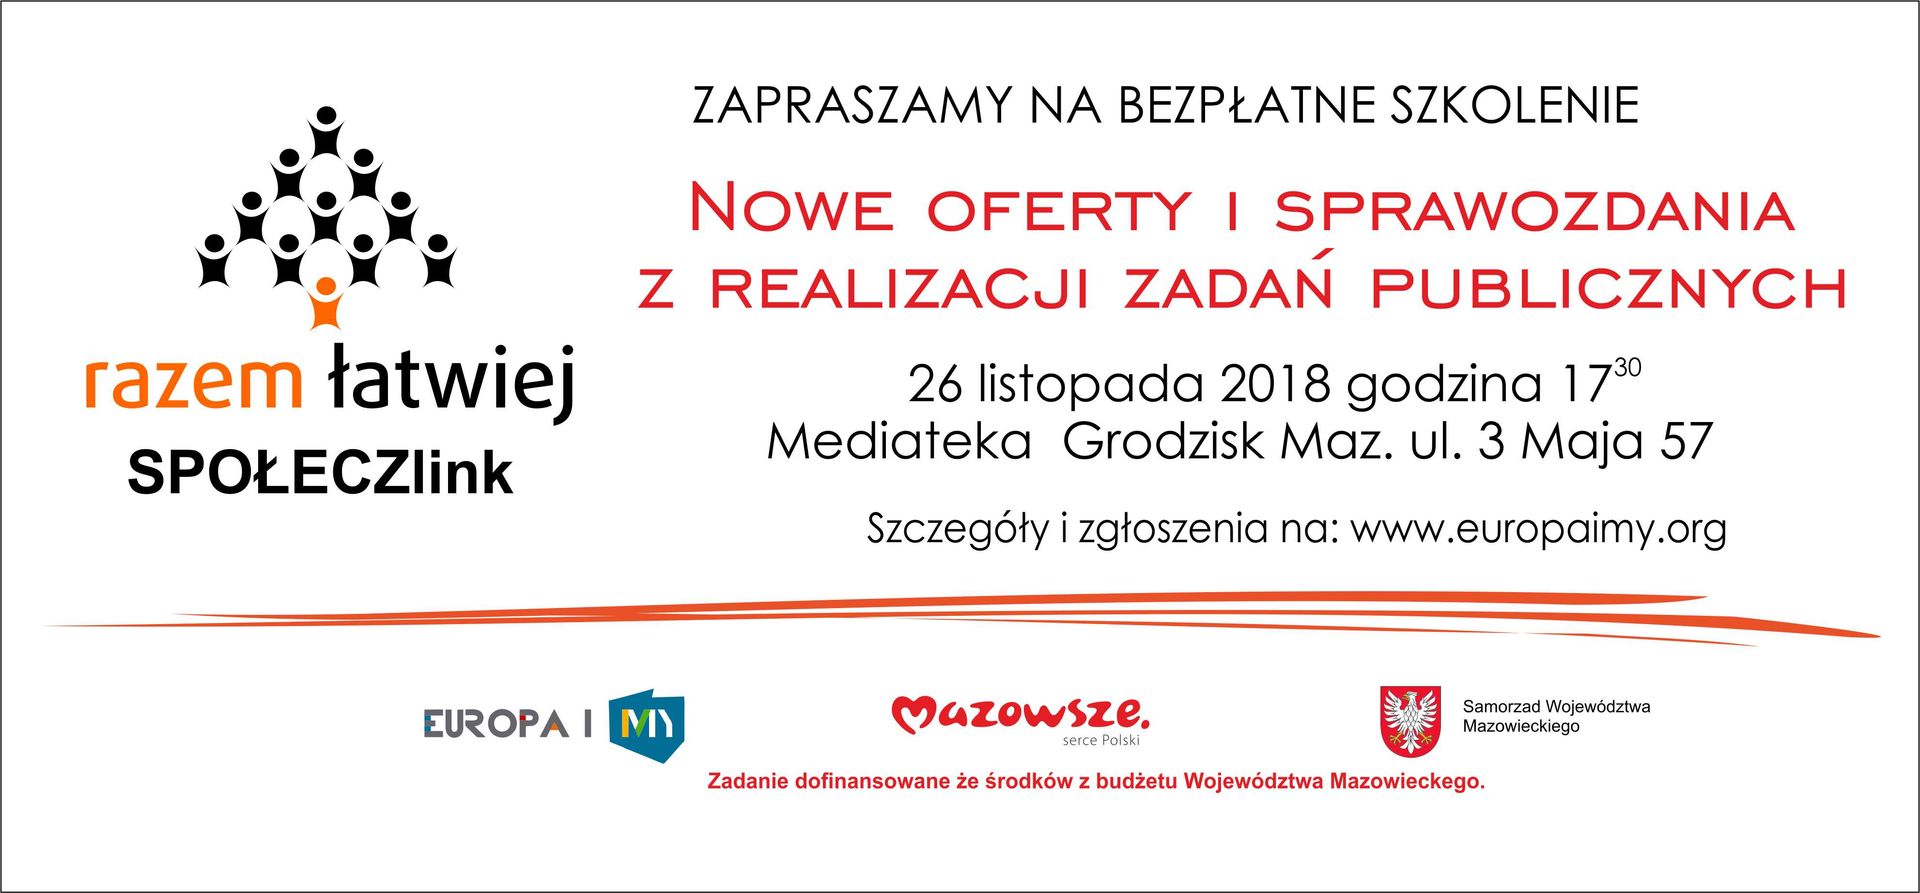 Plakat informujący o bezpłatnym szkoleniu "Nowe oferty i sprawozdania z realizacji zadań publicznych"